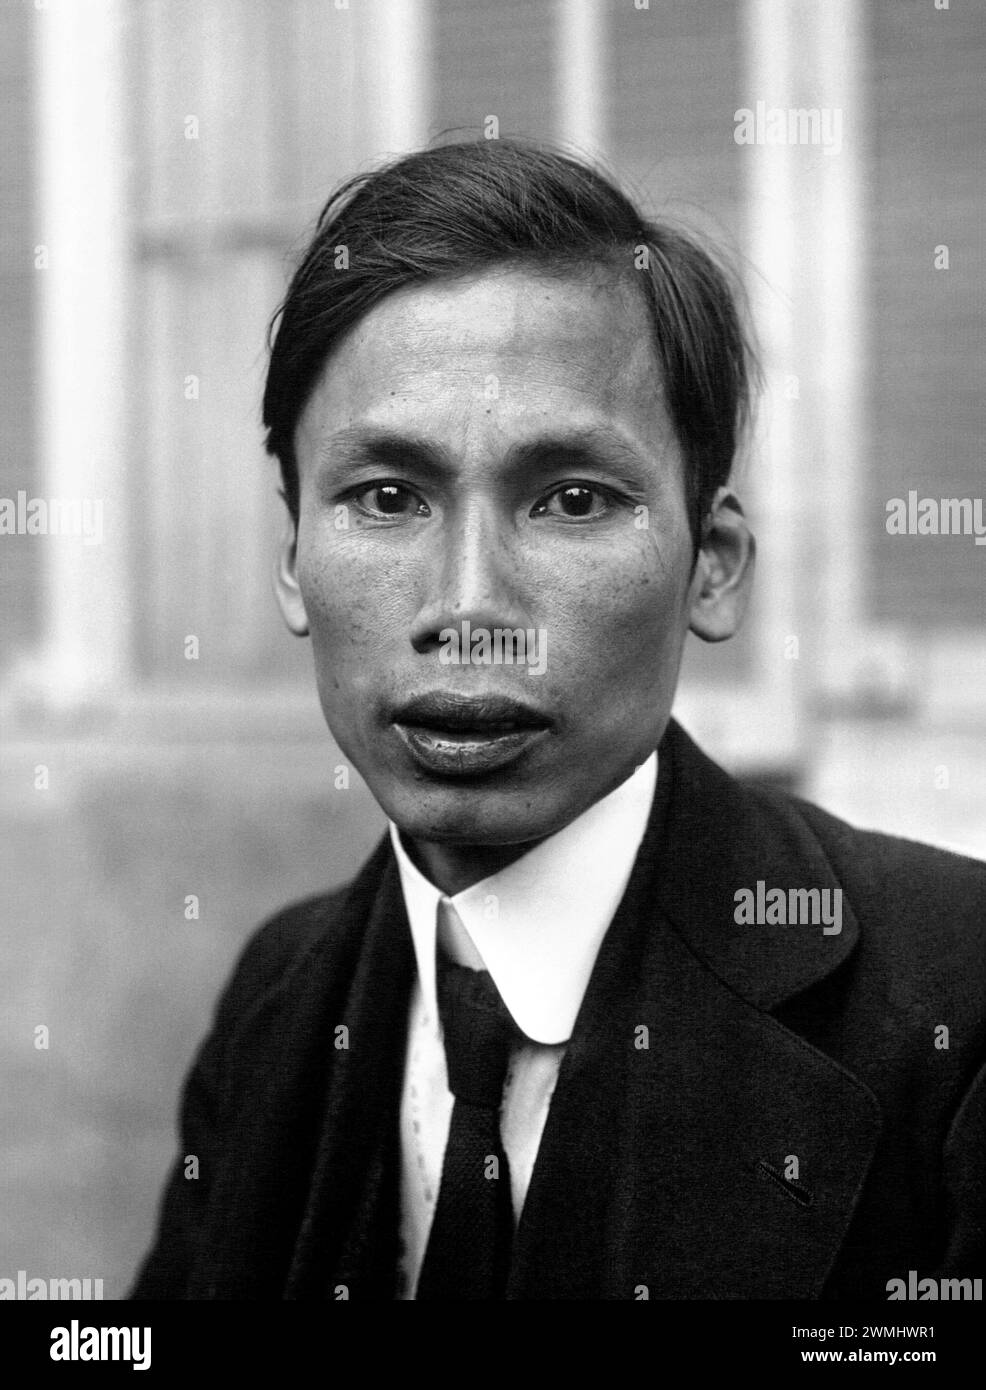 Ho Chi Minh. Portrait du révolutionnaire communiste vietnamien, Hồ Chí Minh (né Nguyễn Sinh Cung 1890-1969), en 1921. Ho Chi Minh a été le 1er président de la République démocratique du Vietnam de 1945 à 1969. Banque D'Images